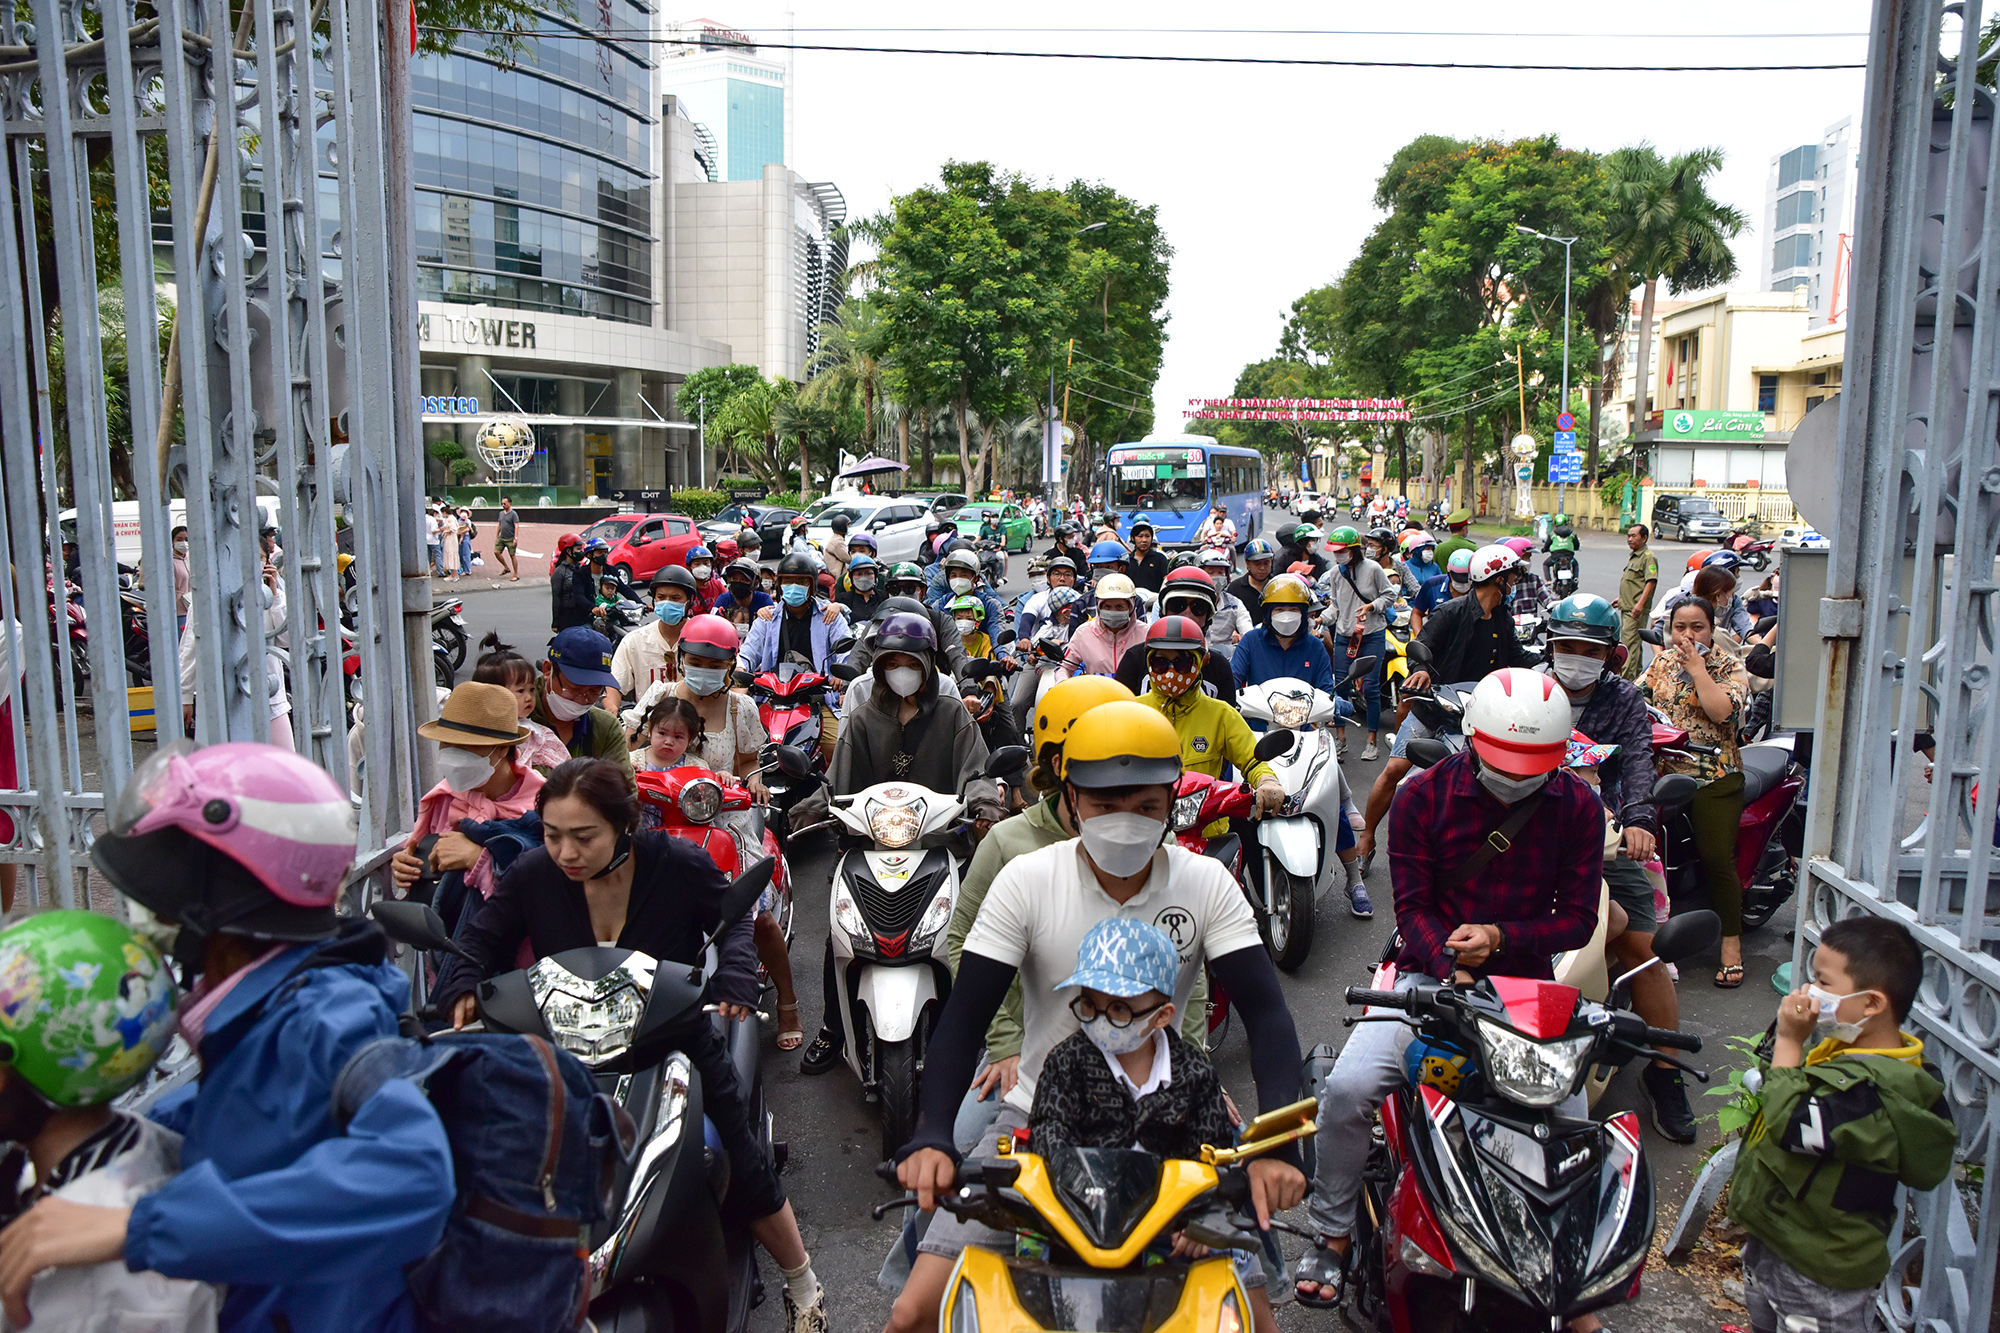 Sáng 30/4, hàng nghìn du khách, người dân TP.HCM từ các ngả&nbsp;đổ về 2 cổng chính của Thảo Cầm Viên Sài Gòn để tham quan, vui chơi.